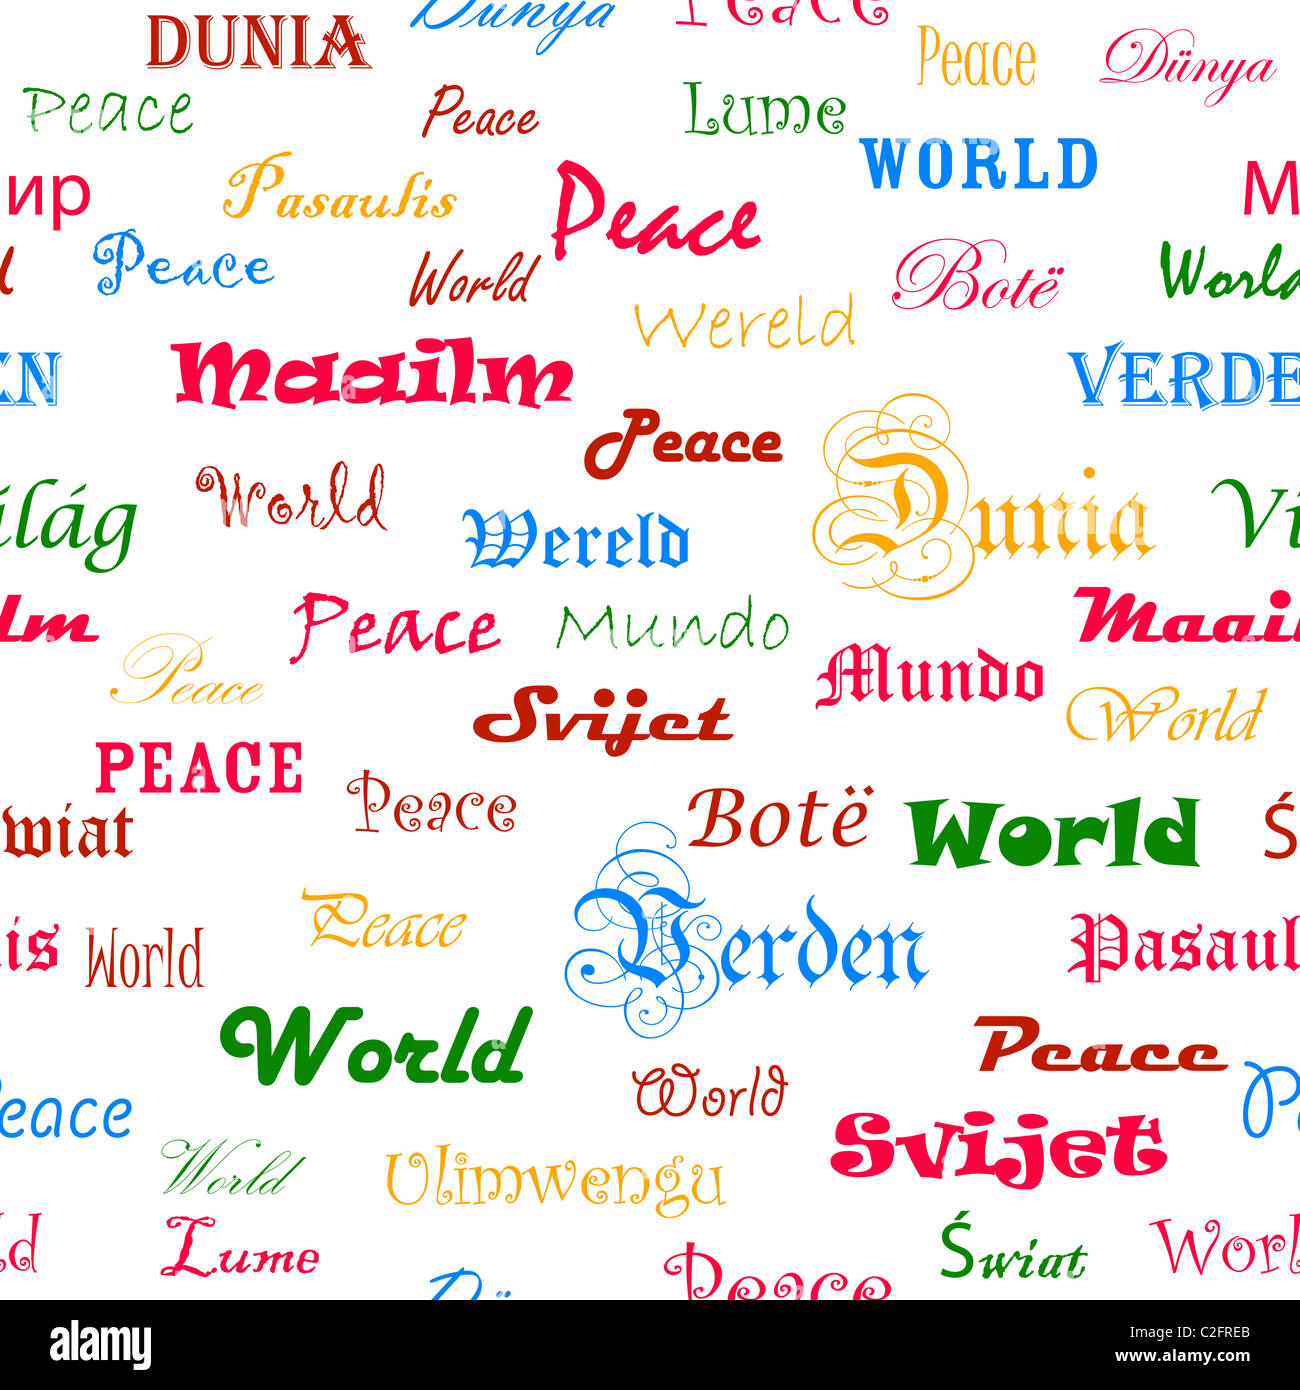 Frieden Nahtlose Tapete Mit Dem Wort Frieden In Verschiedenen Sprachen Stockfotografie Alamy